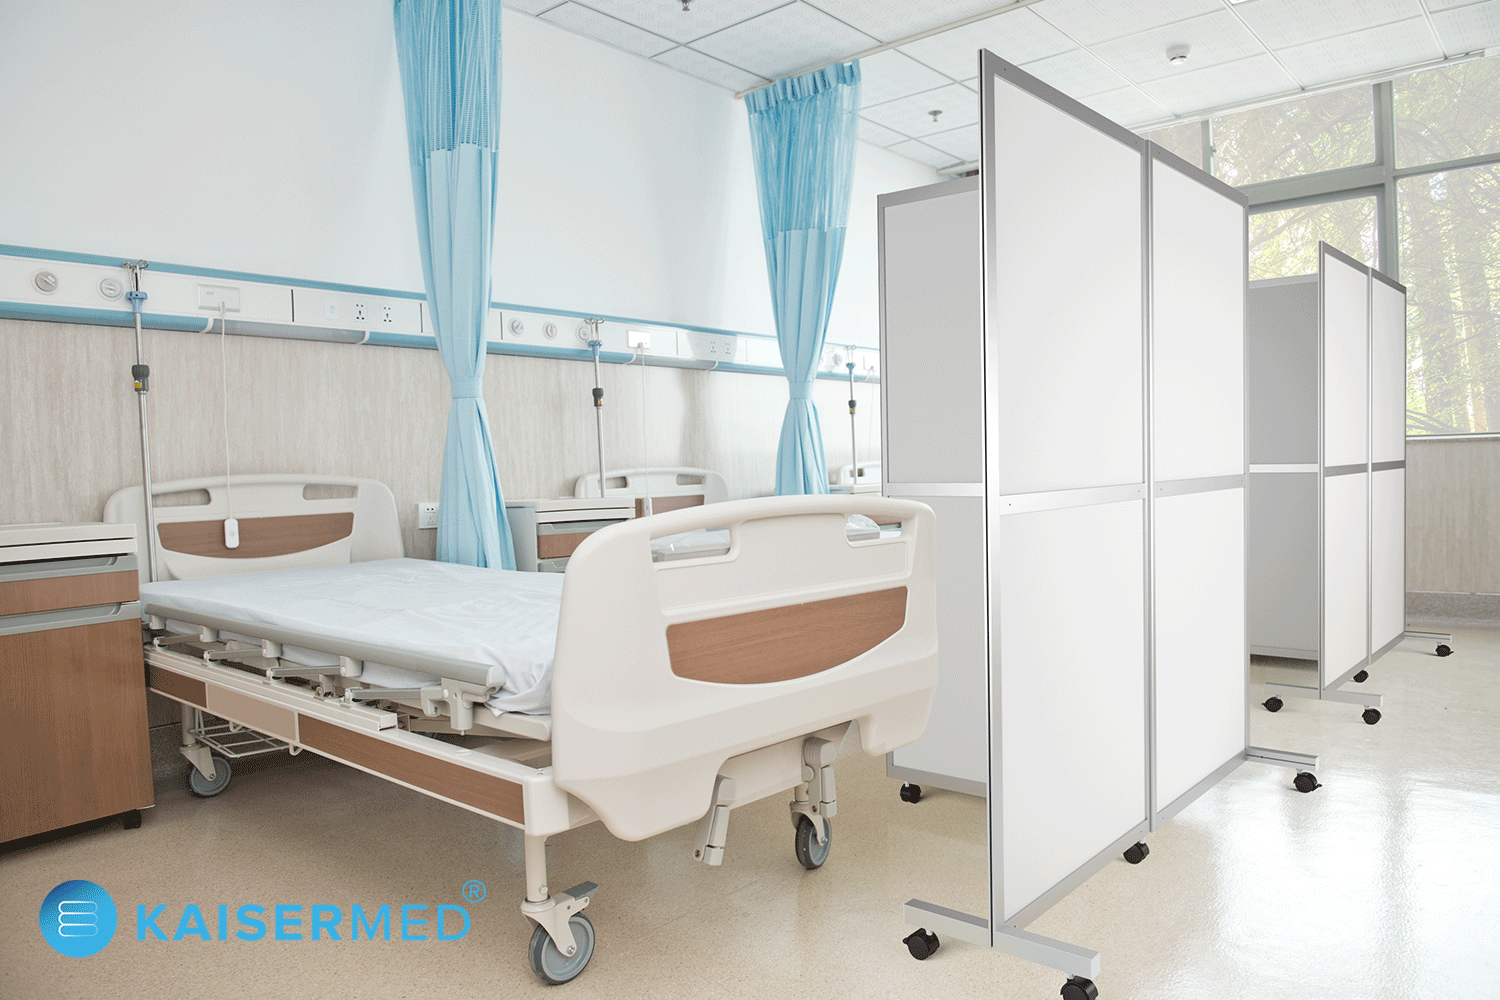 Mobile Trennwand / Faltwand auf Rollen 3-teilig mit Aluminium Rahmen steht in einem Krankenzimmer